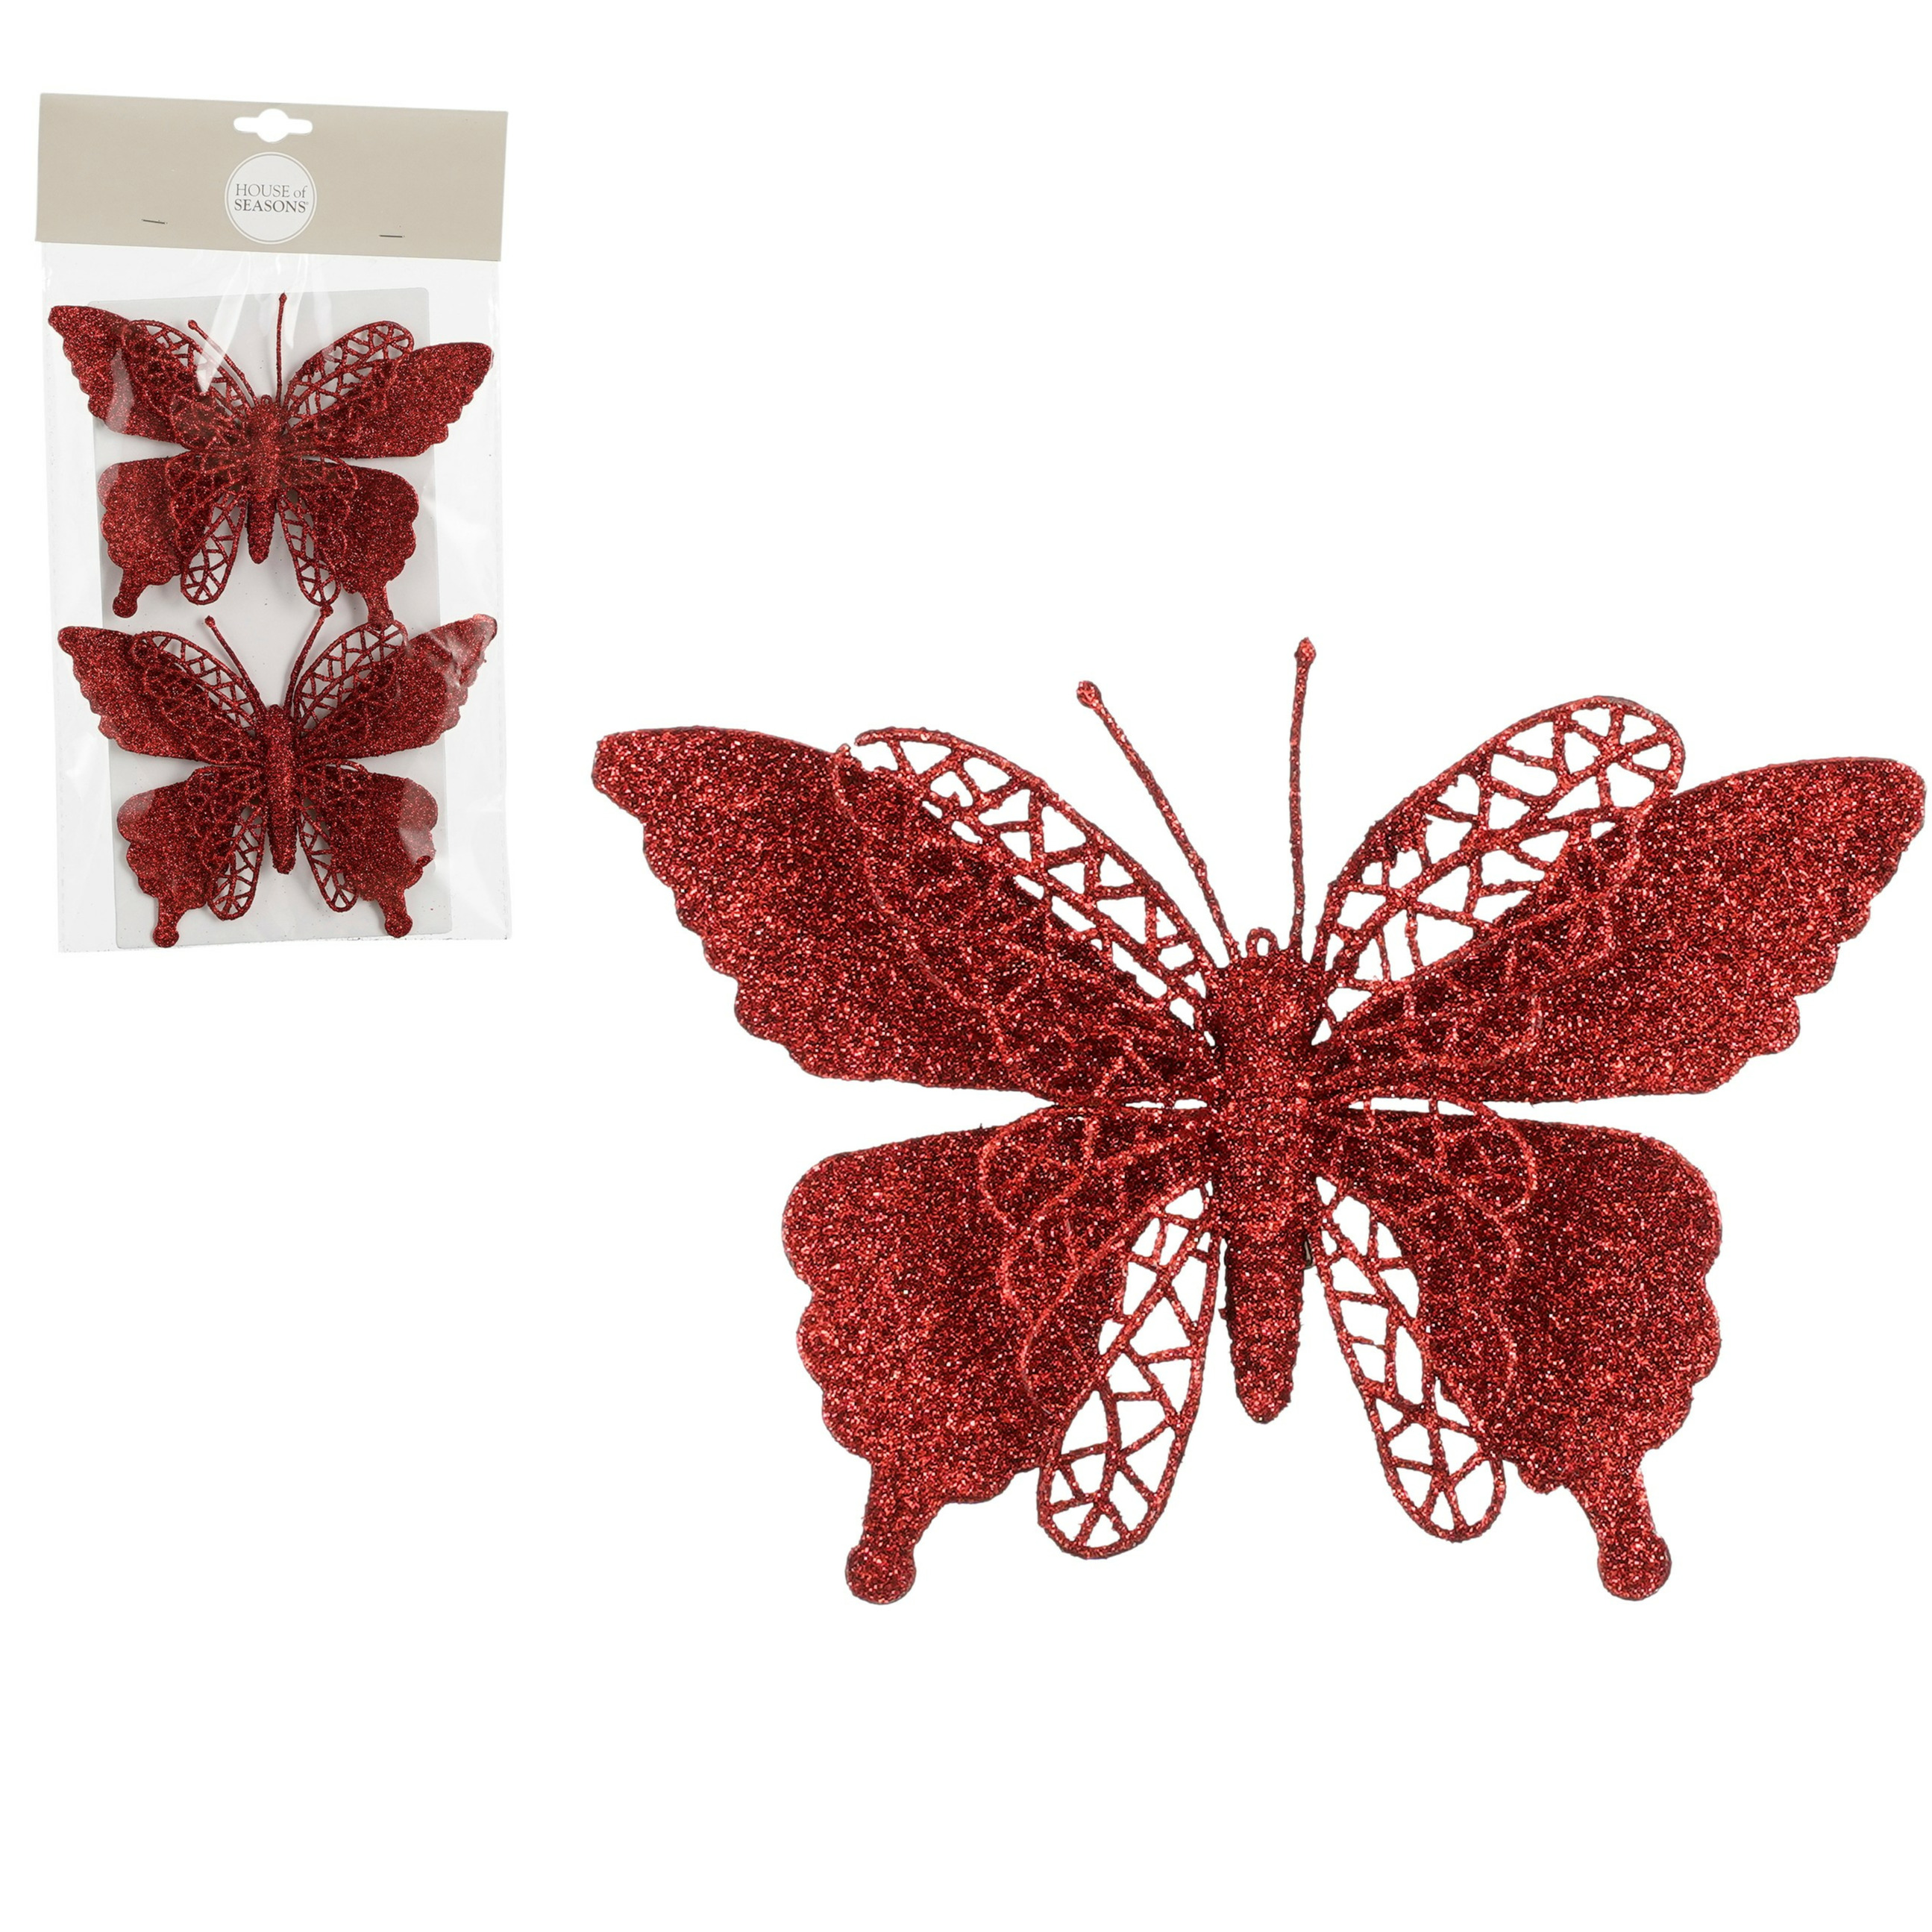 House of Seasons vlinders op clip - 2x stuks - rood glitter - 16 cm